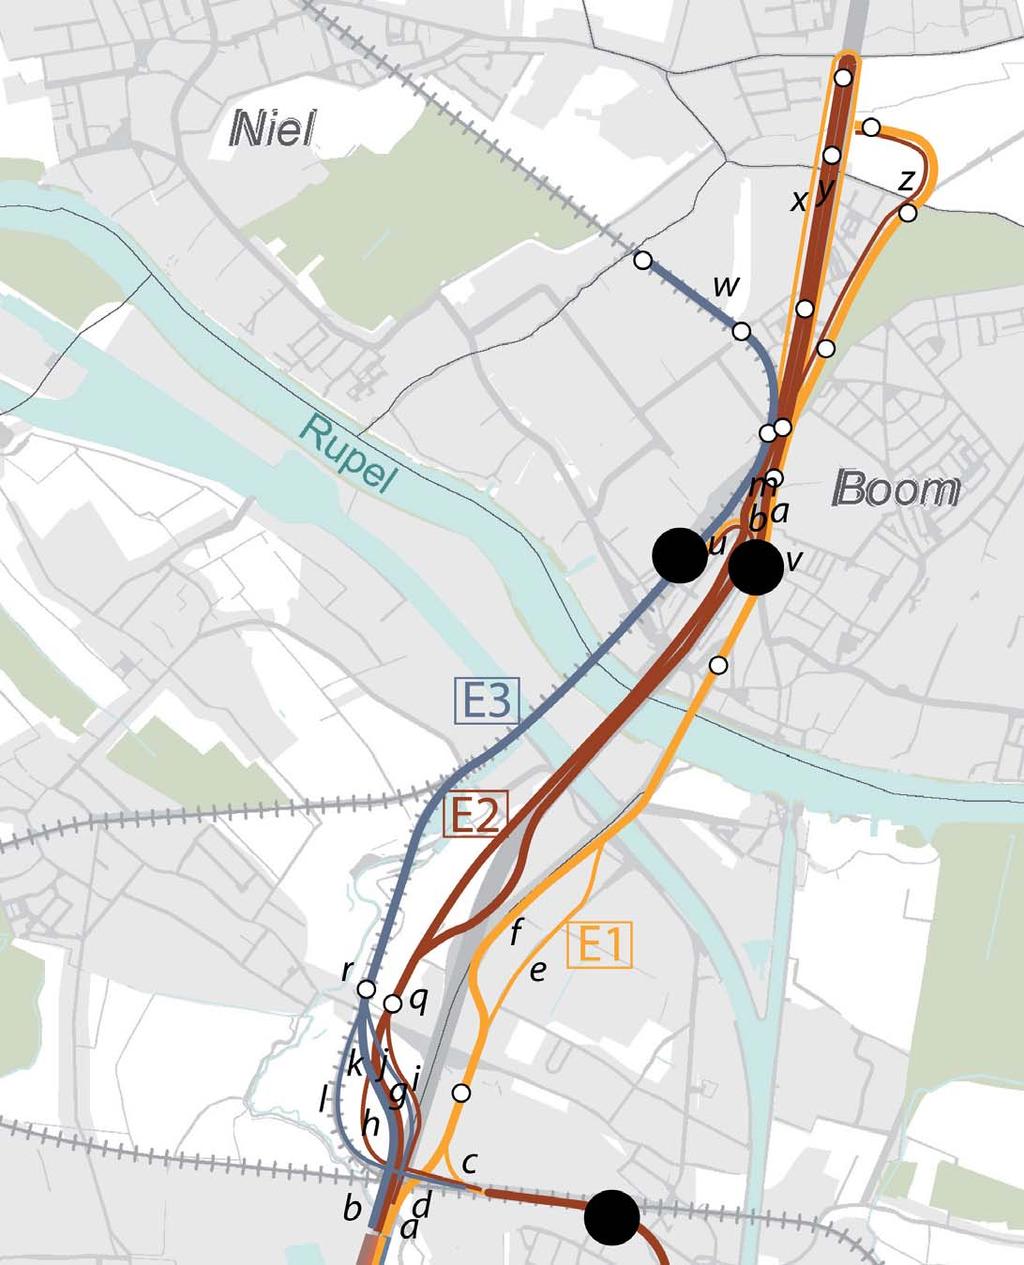 Titel: Onderzoek ruimtelijke inpassing: Overzicht deeltracé E Project: planmer tramlijn Boom - Brussel maart 2013 Opdrachtgever: